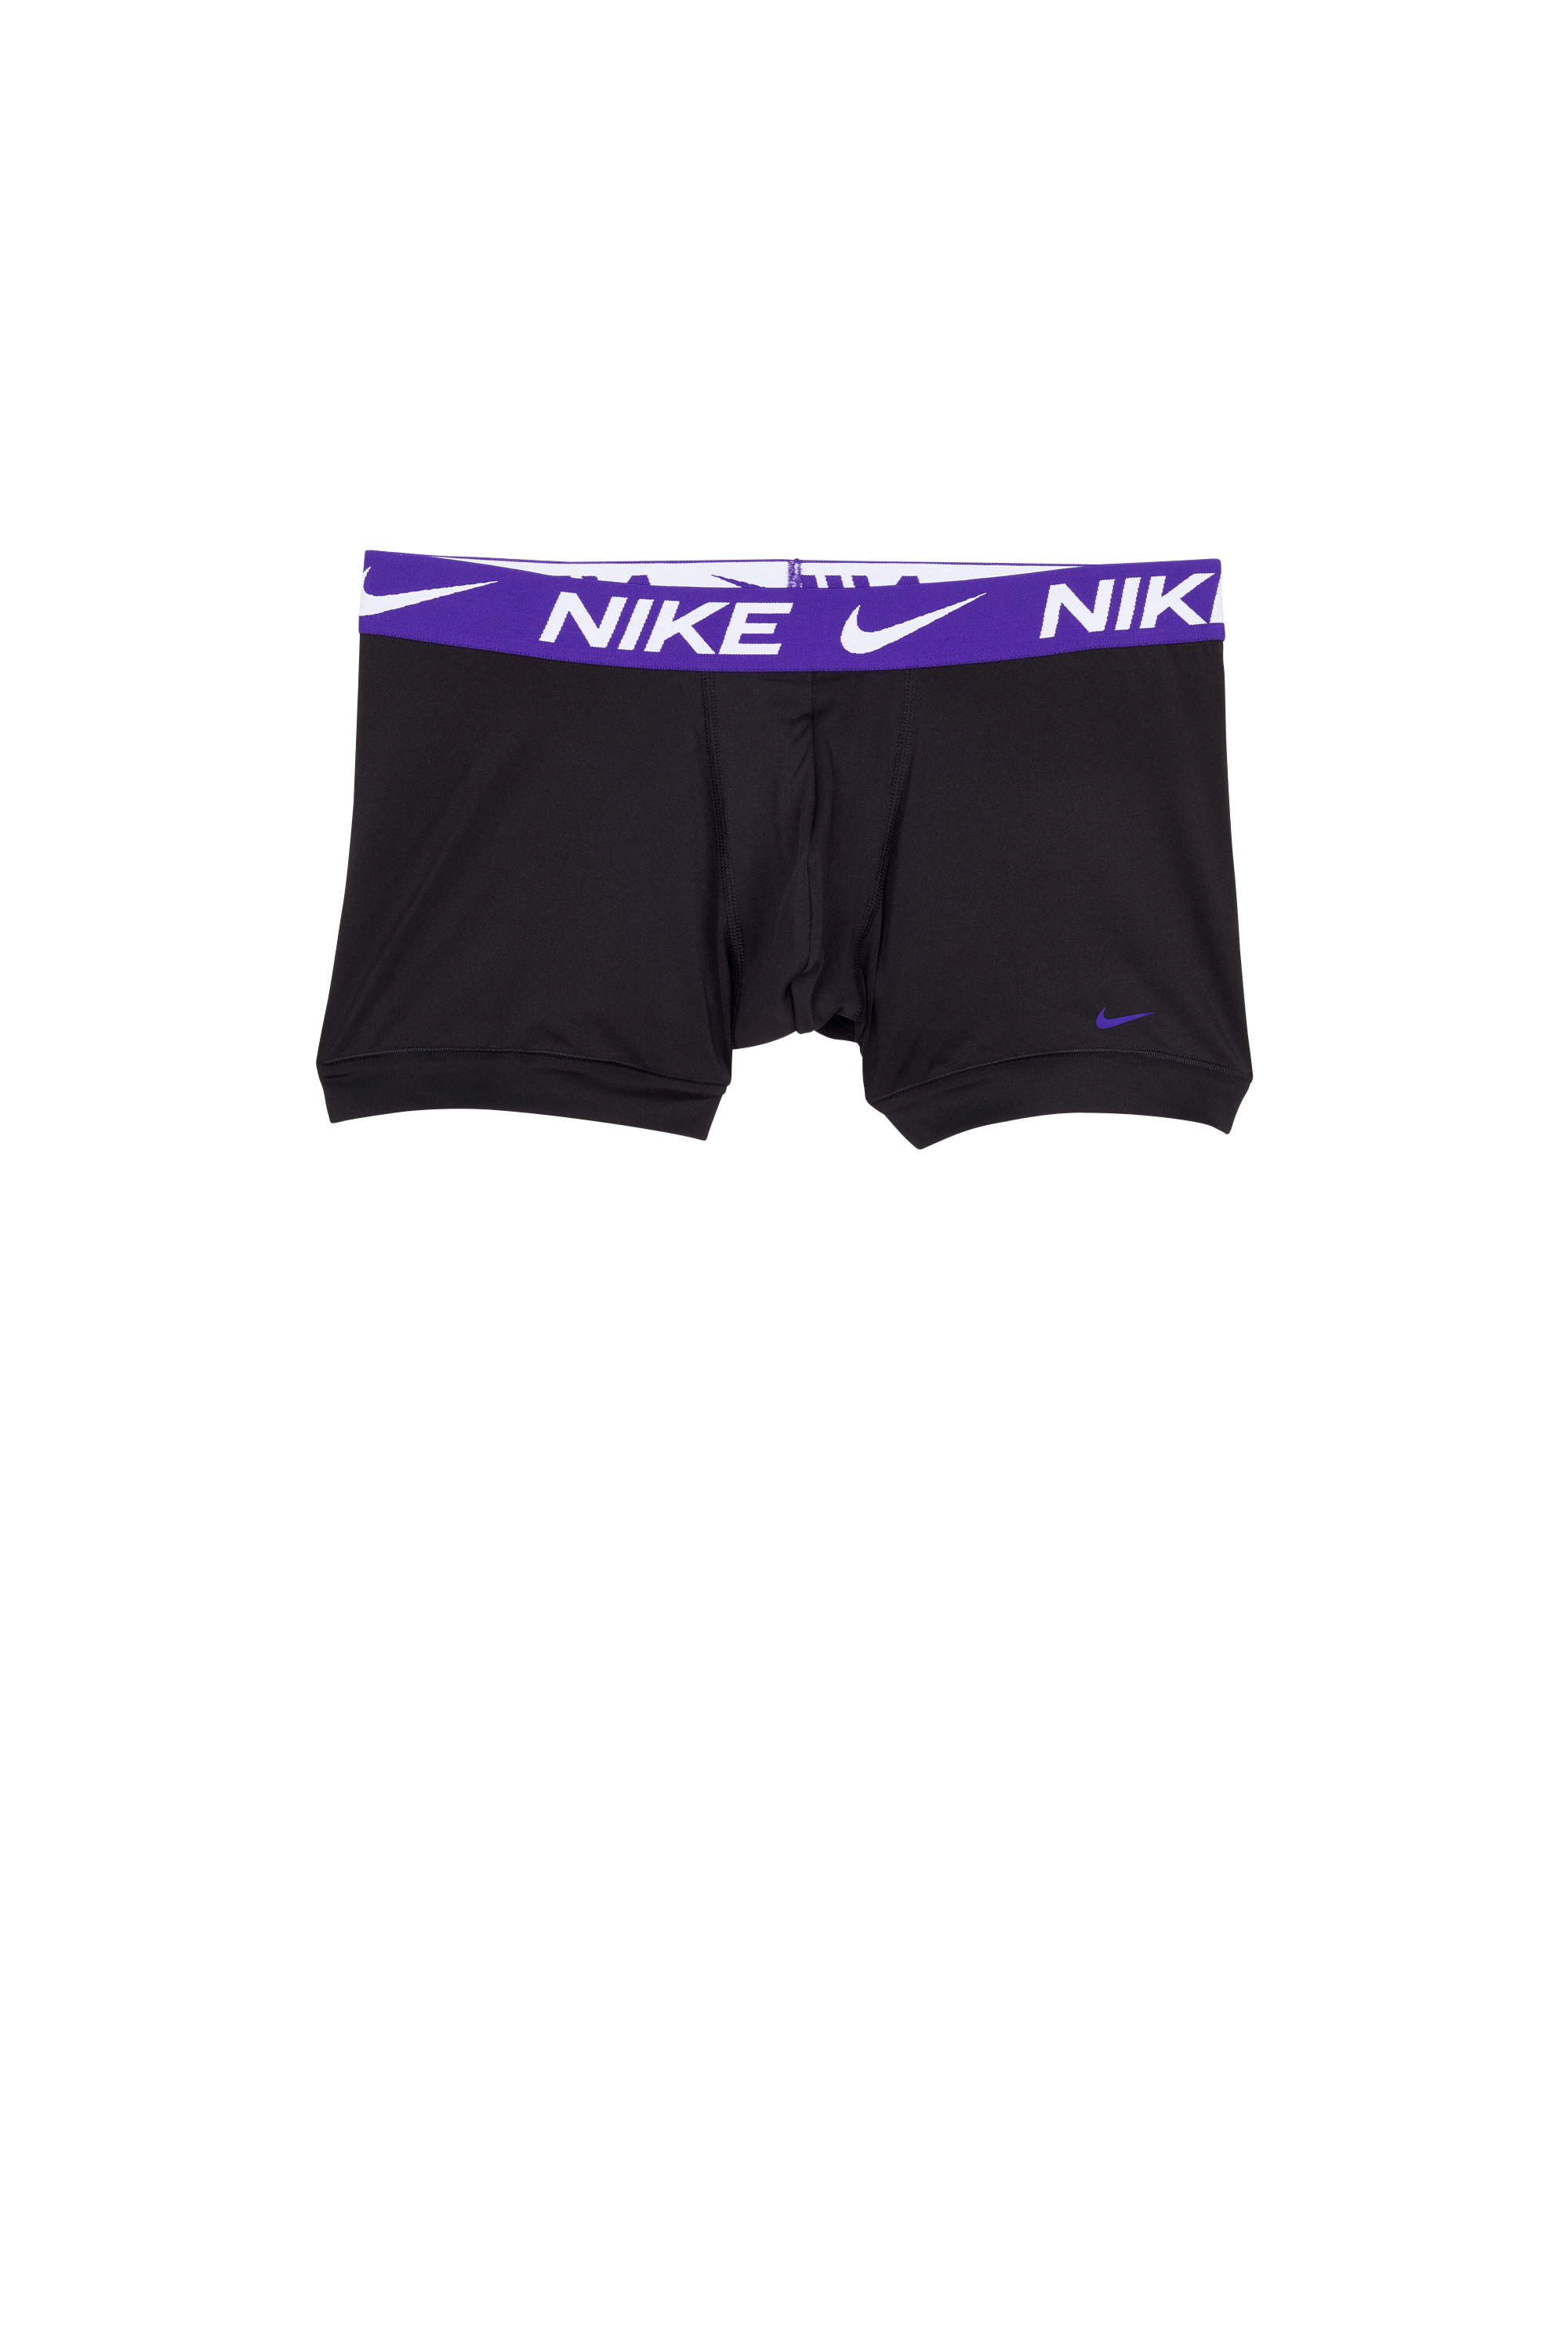 Nike Underwear - Lot de 3 boxers - Taille S